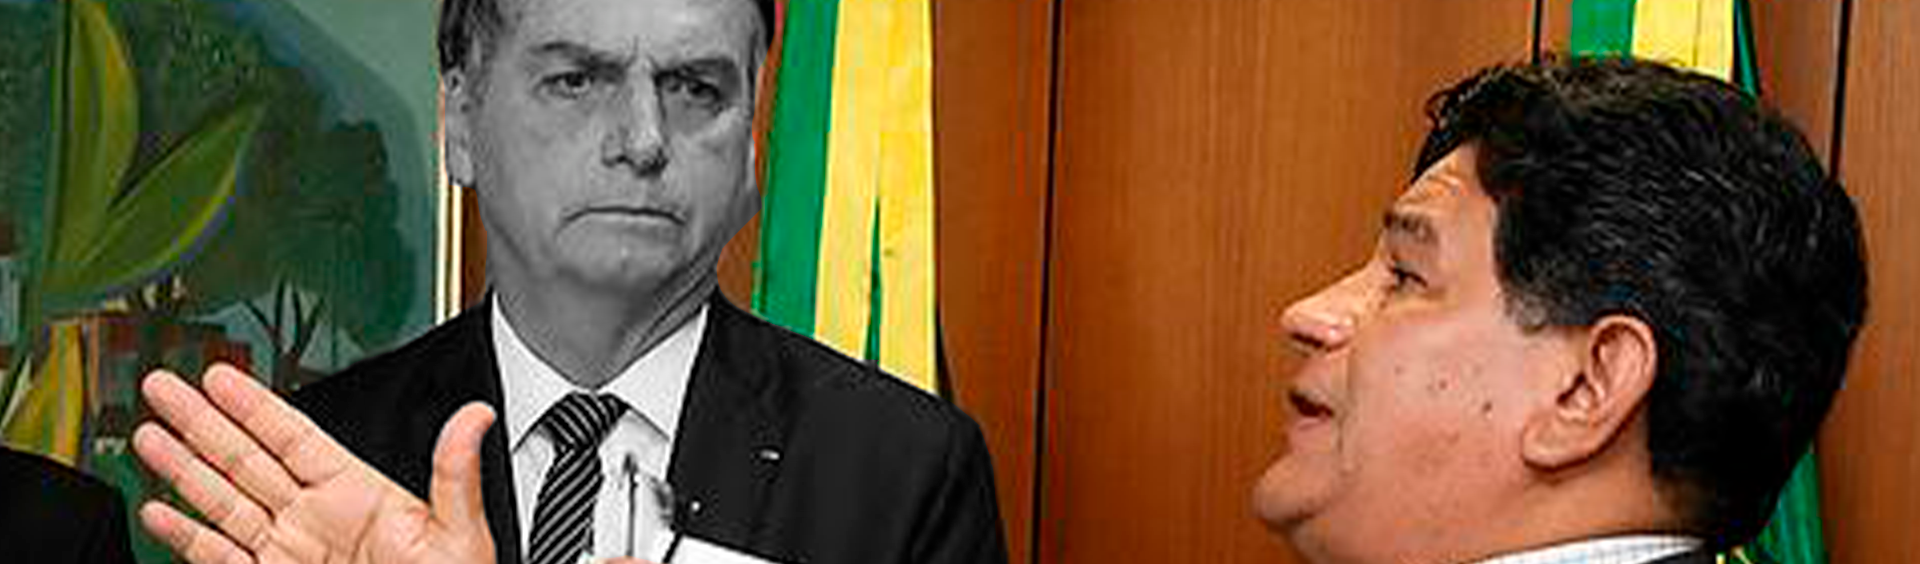 19 vezes: pastor pivô do escândalo no MEC visitou Bolsonaro mais que Mourão em 2019